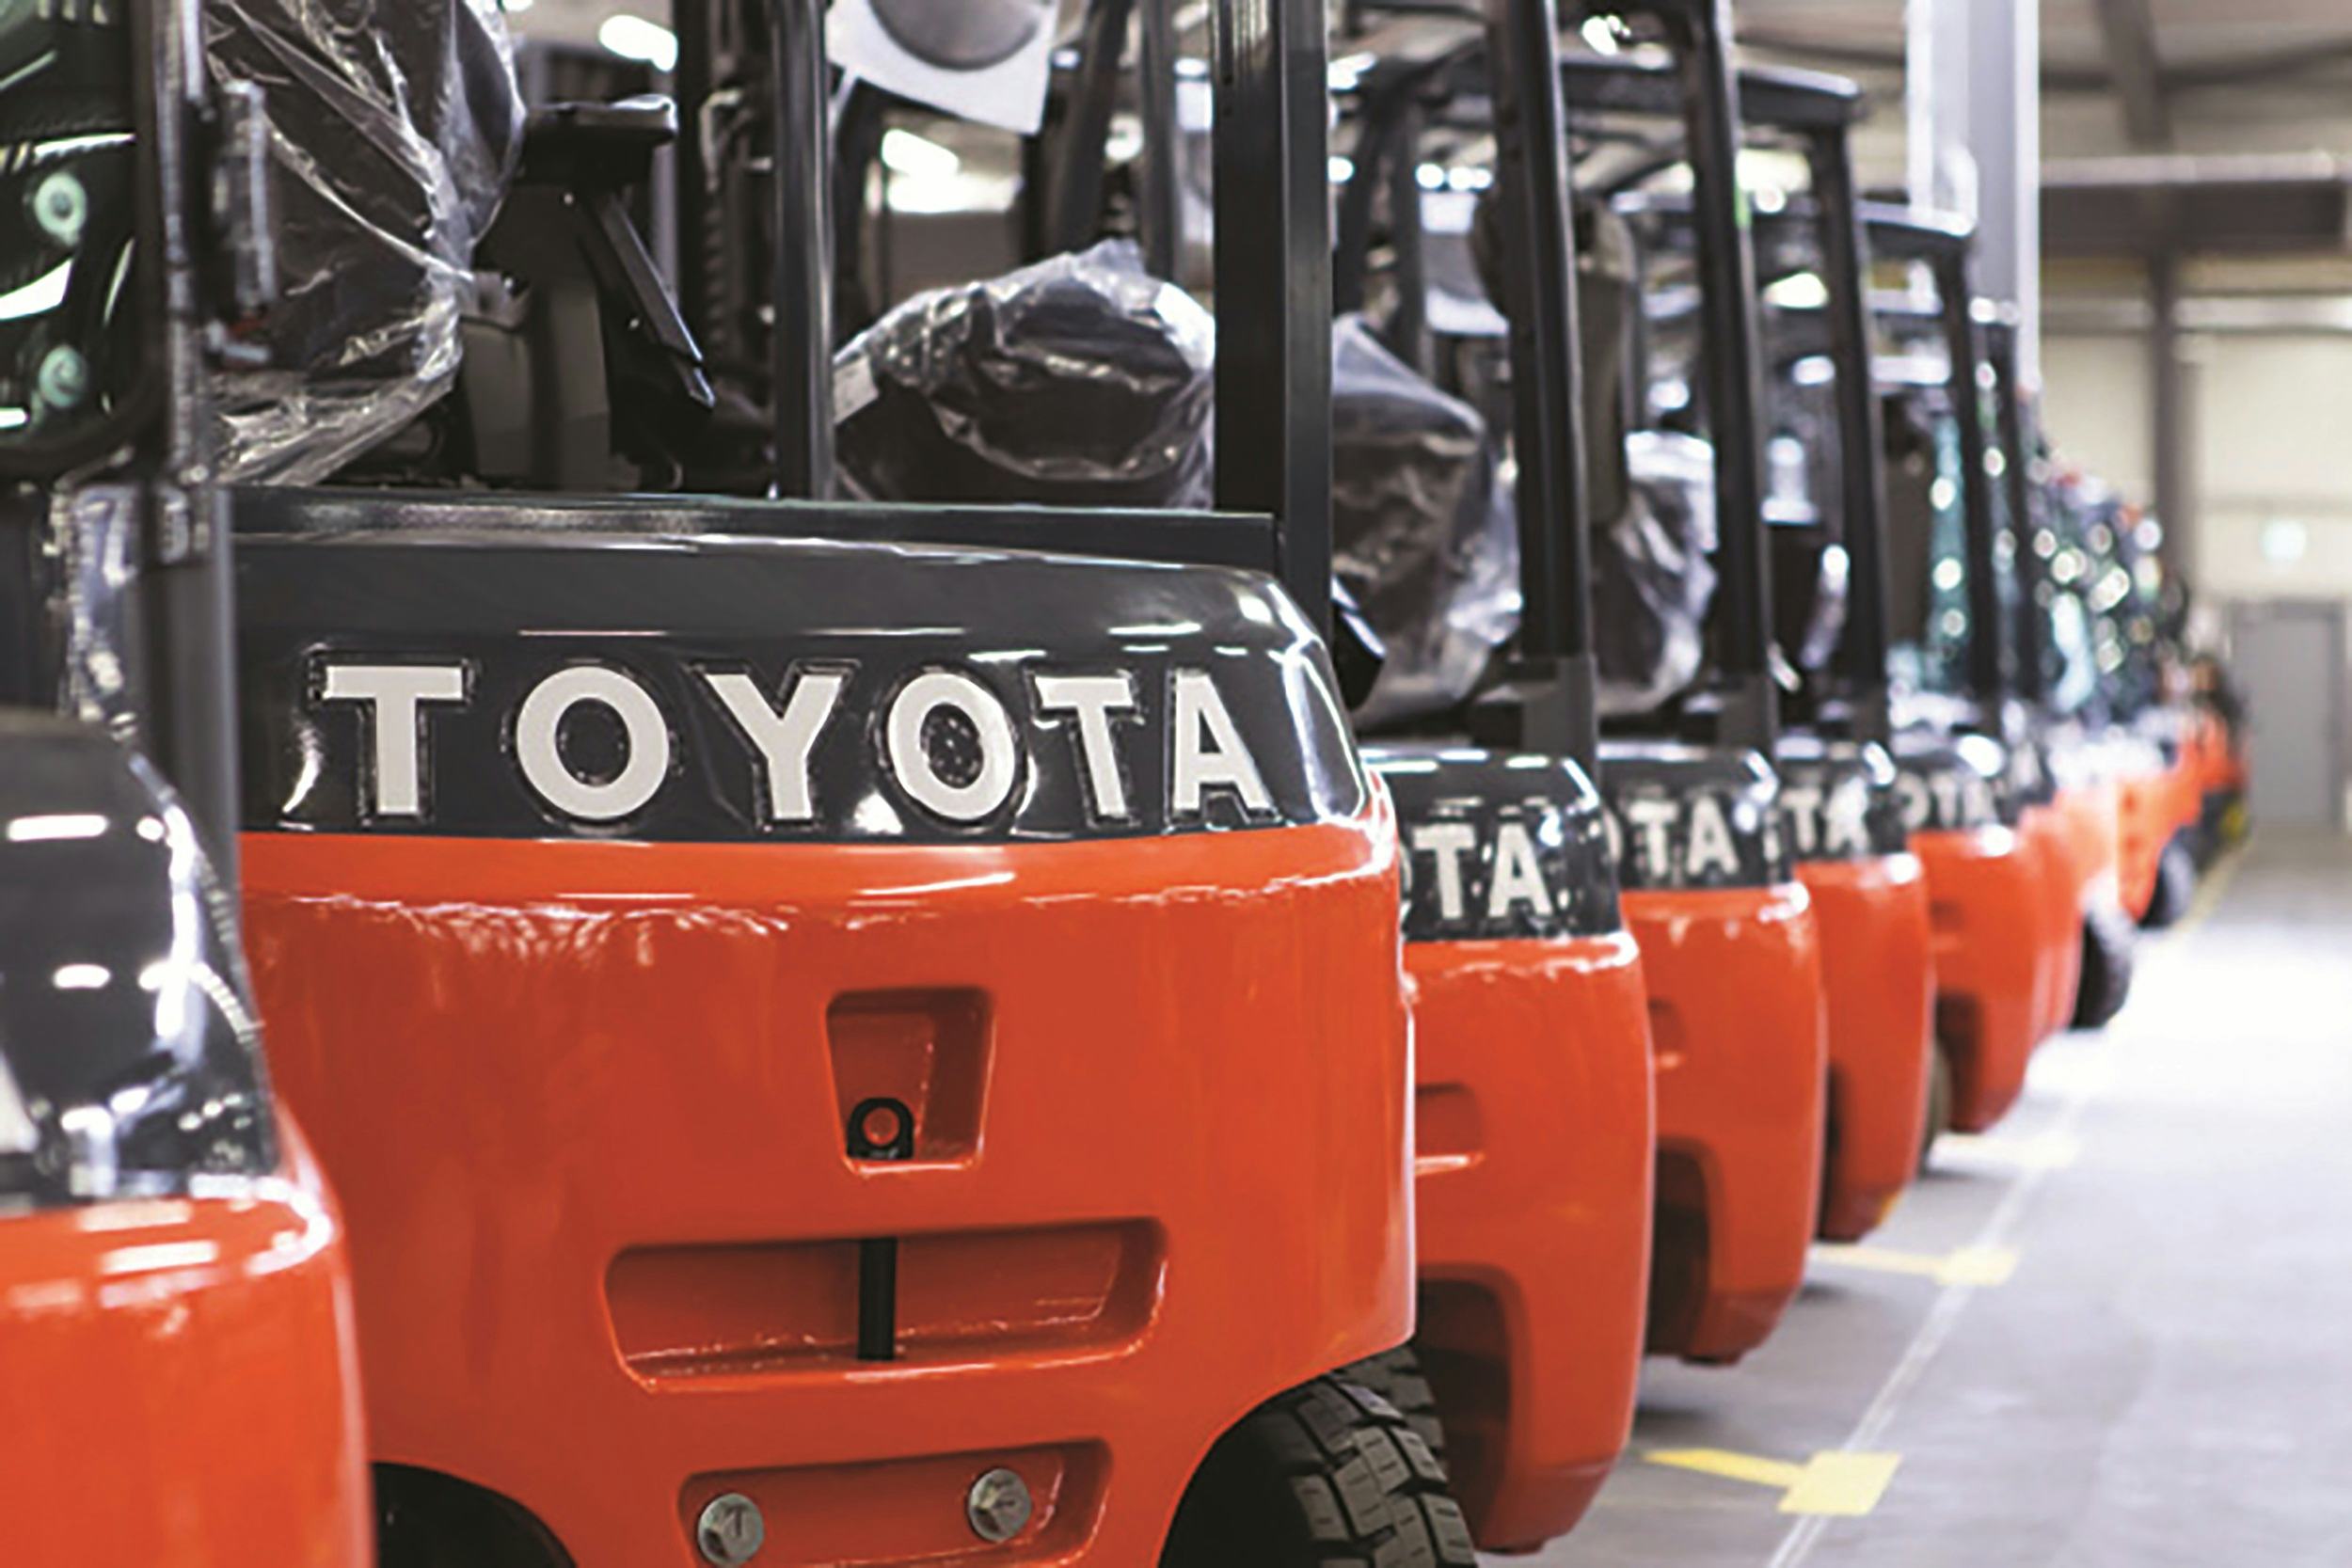 Heftruck business groeit licht; Toyota blijft de grootste